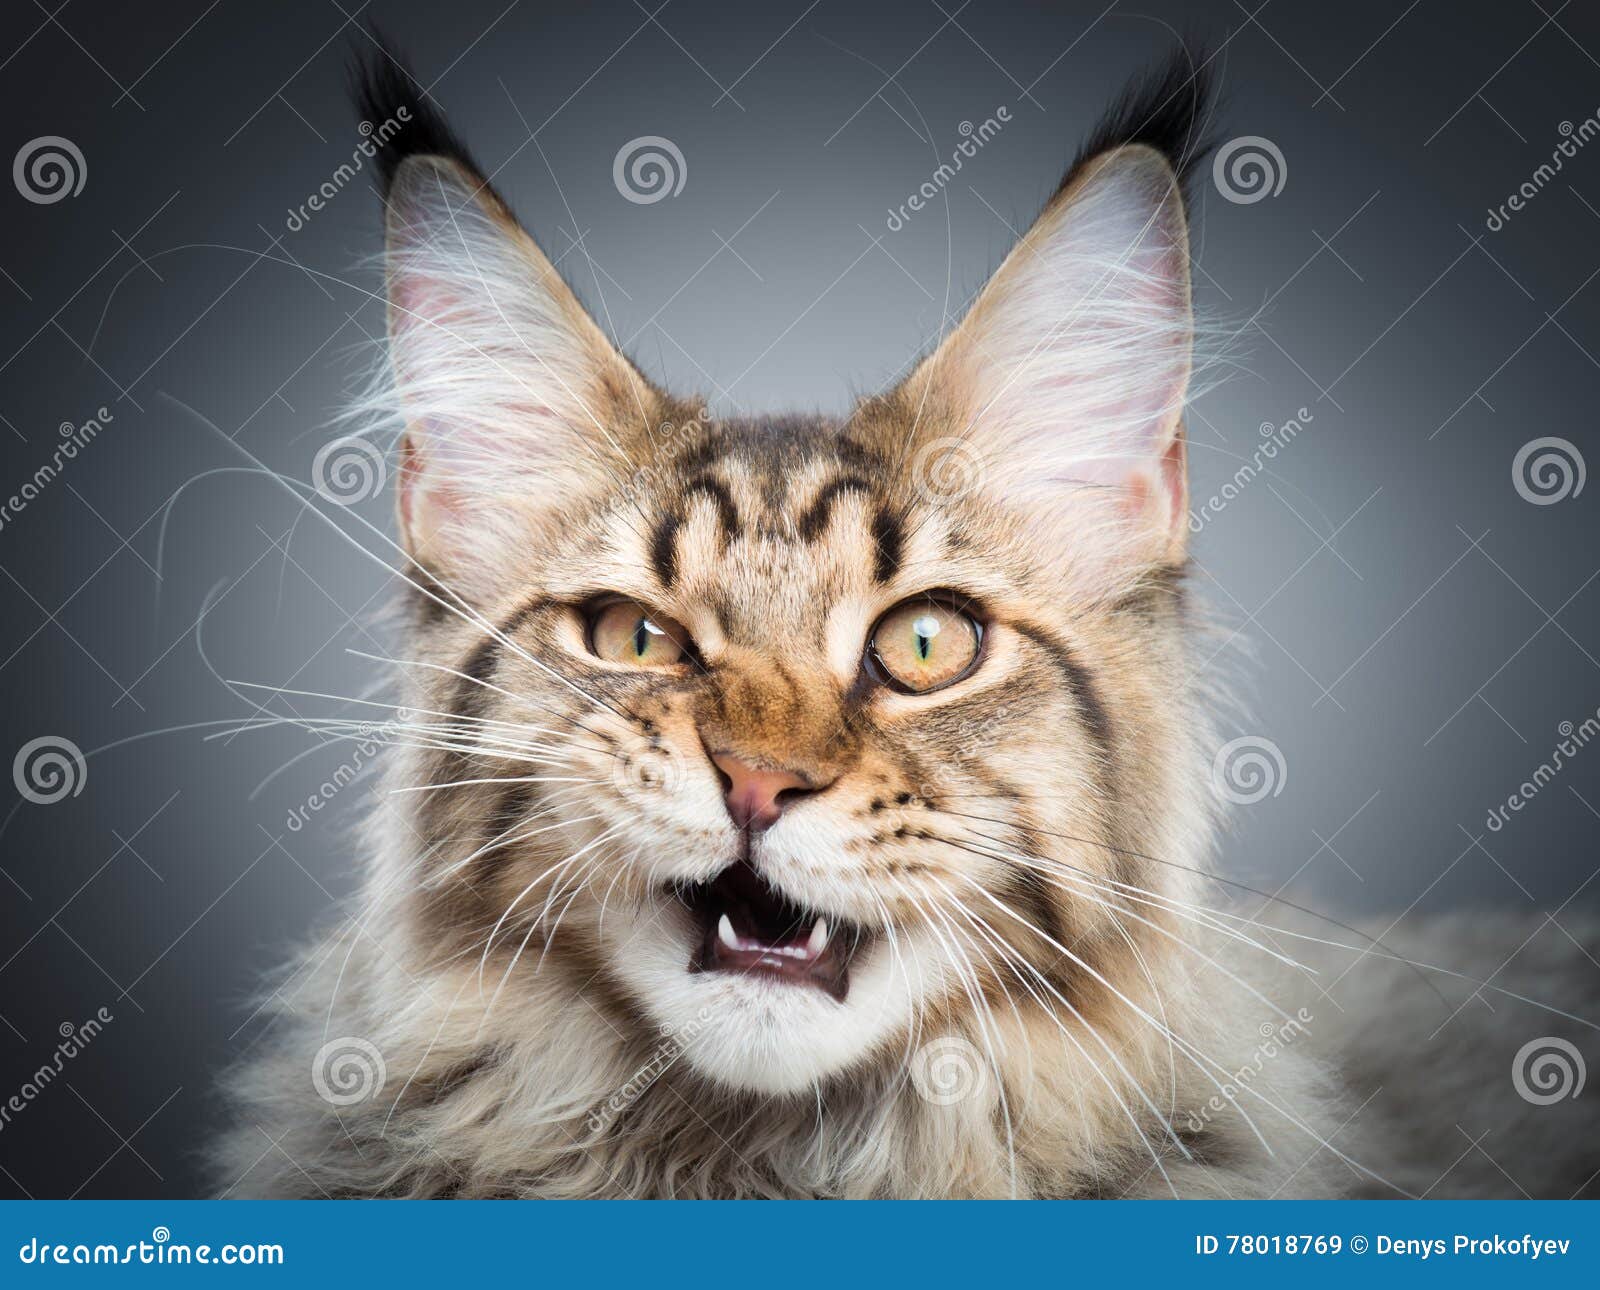 portrait of maine coon cat